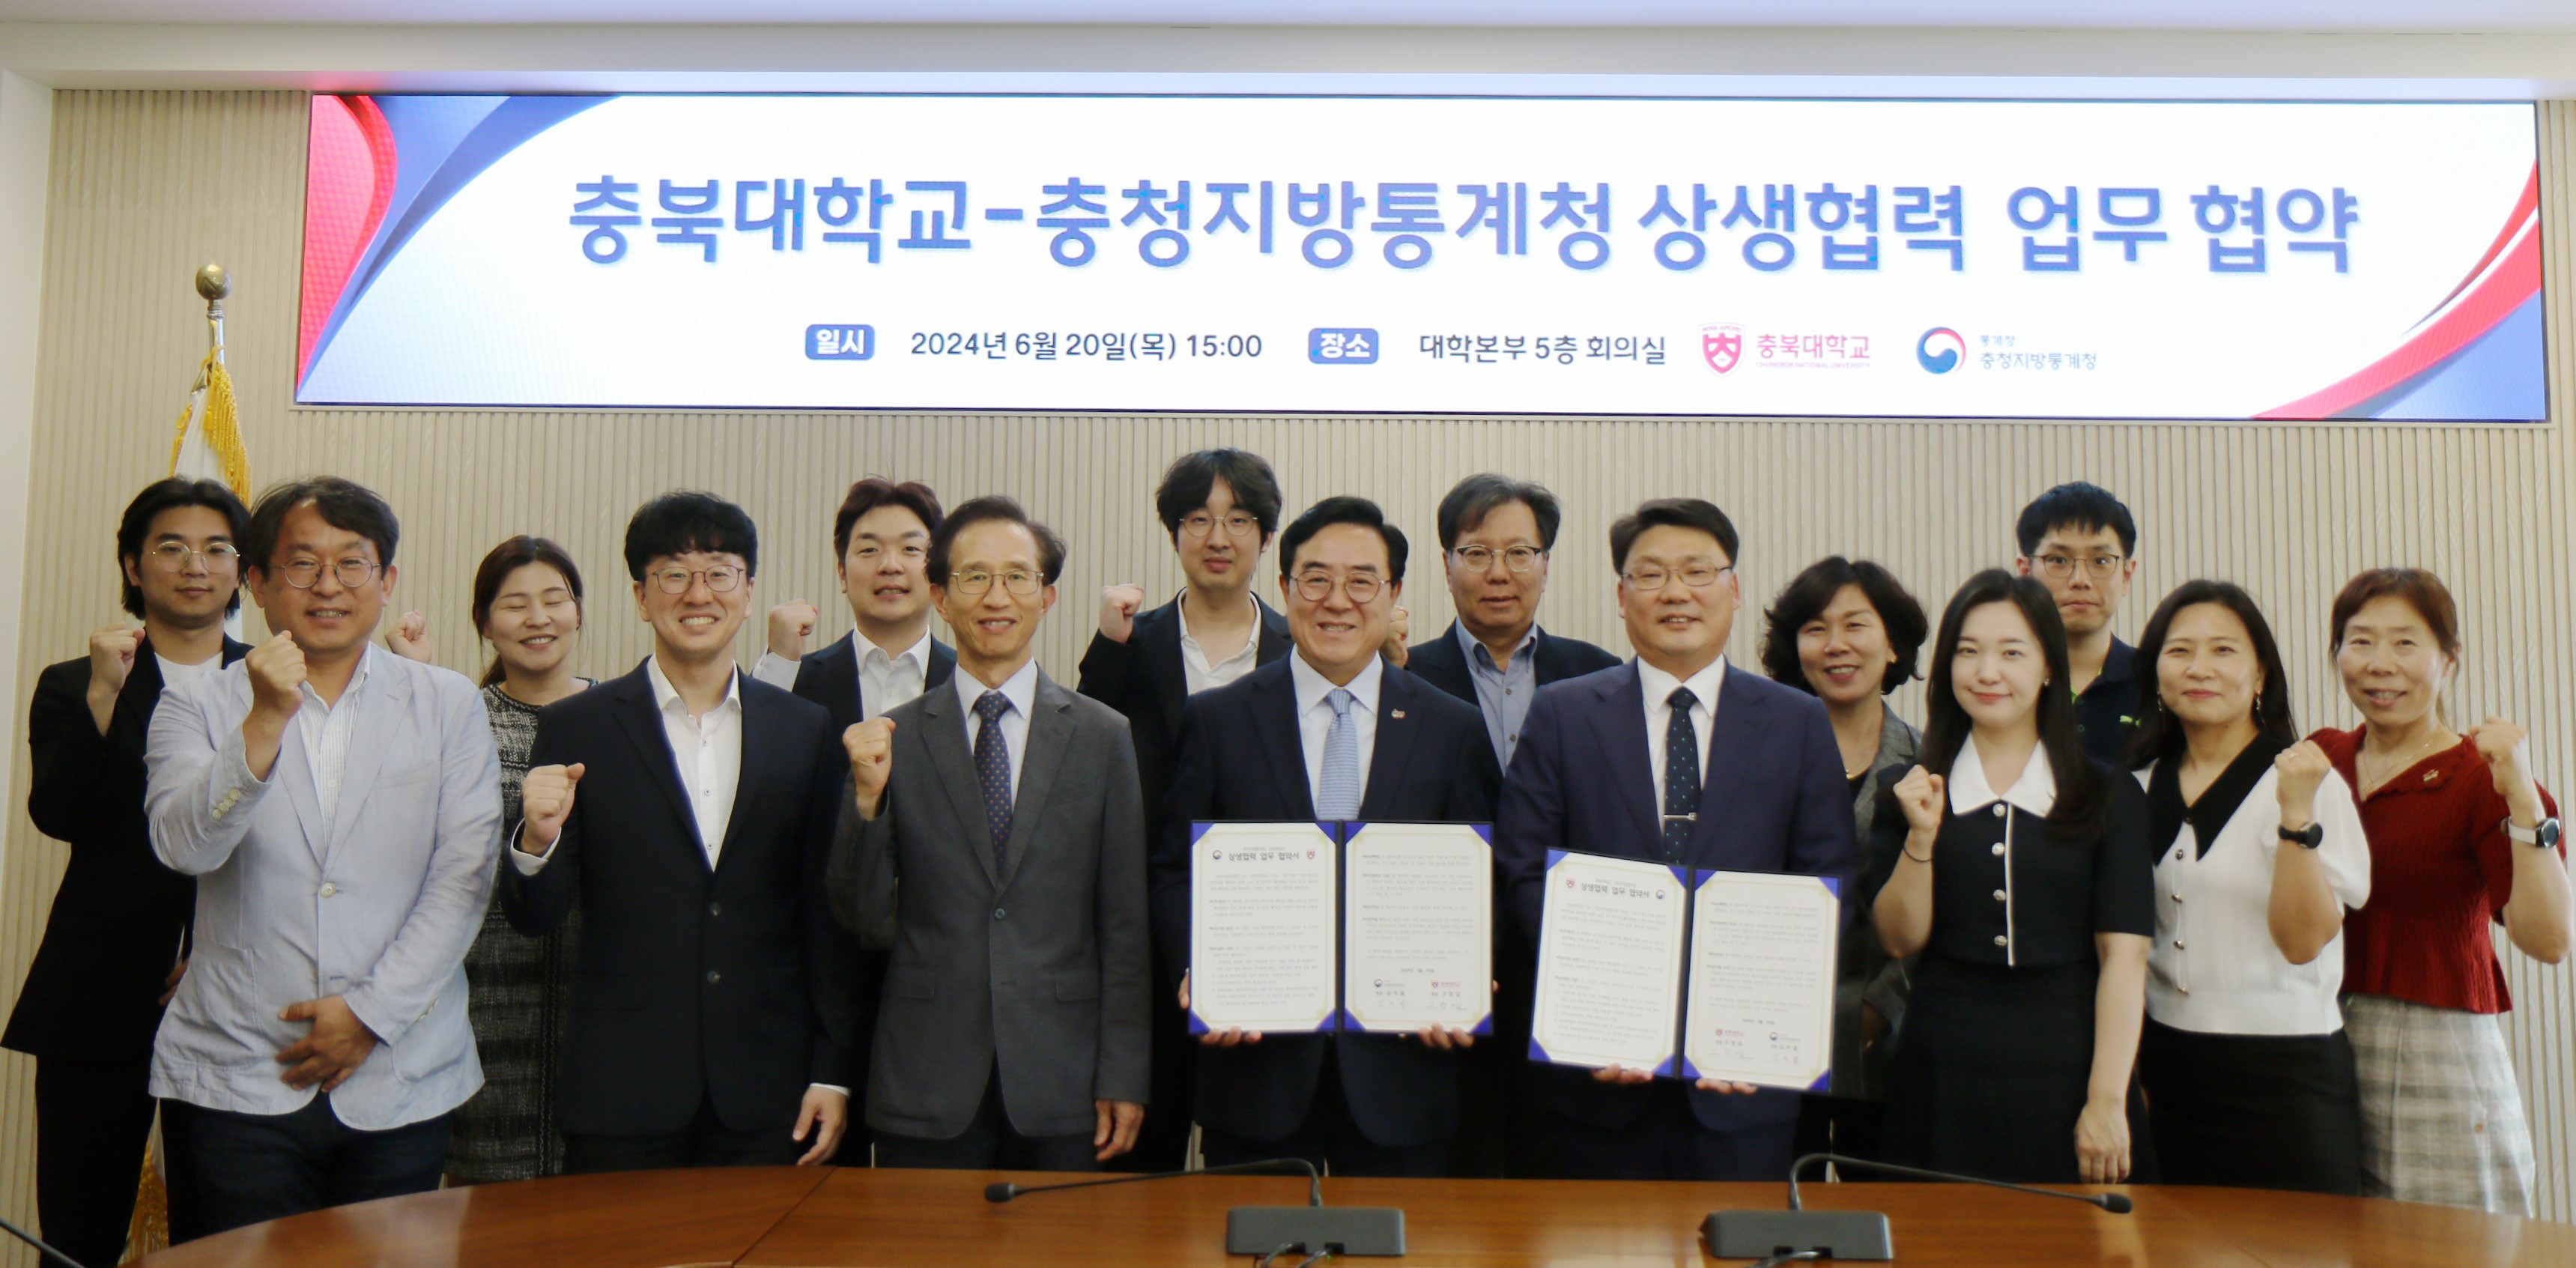 충청지방통계청은 6월 20일 충북대학교와 데이터교육 활성화 및 지역통계 발전을 위해 업무협약(MOU)을 맺었습니다.